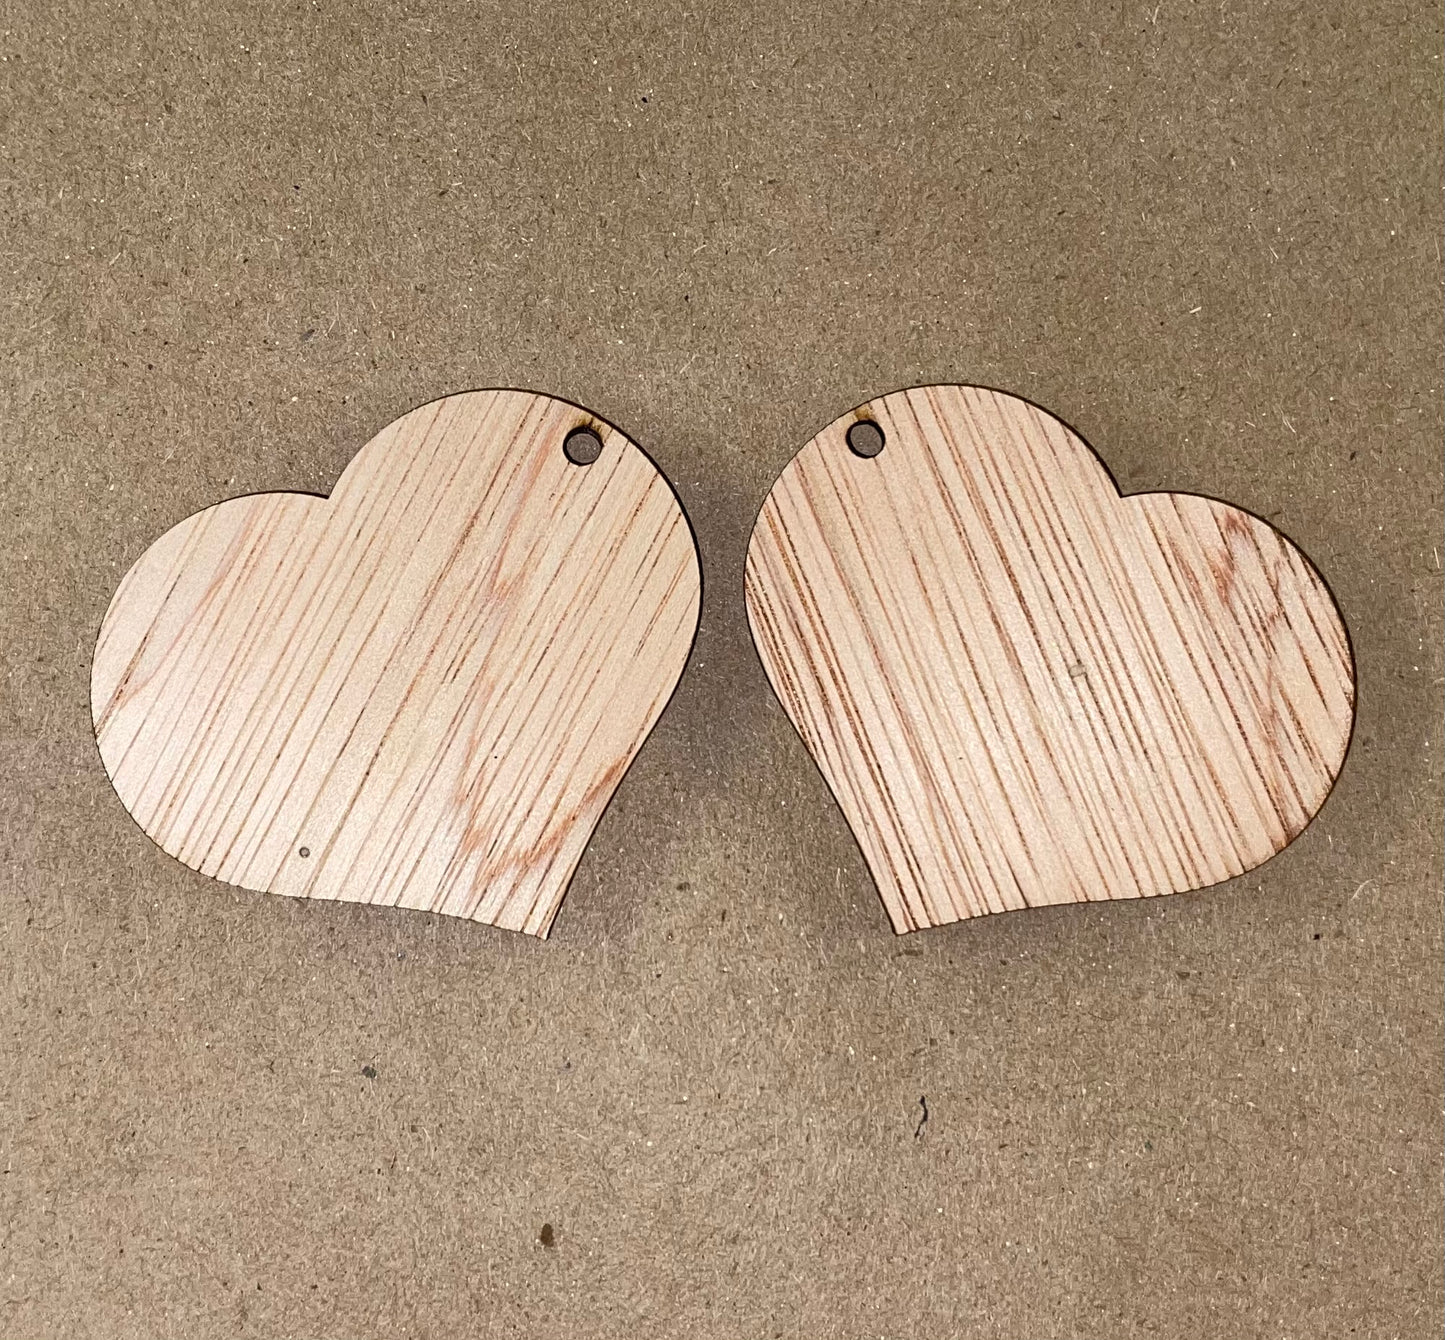 Solid Heart Blank Wood Earrings. DIY jewelry. Unfinished laser cut wood jewelry. Wood earring blanks. Unfinished wood earrings. Wood jewelry blanks.